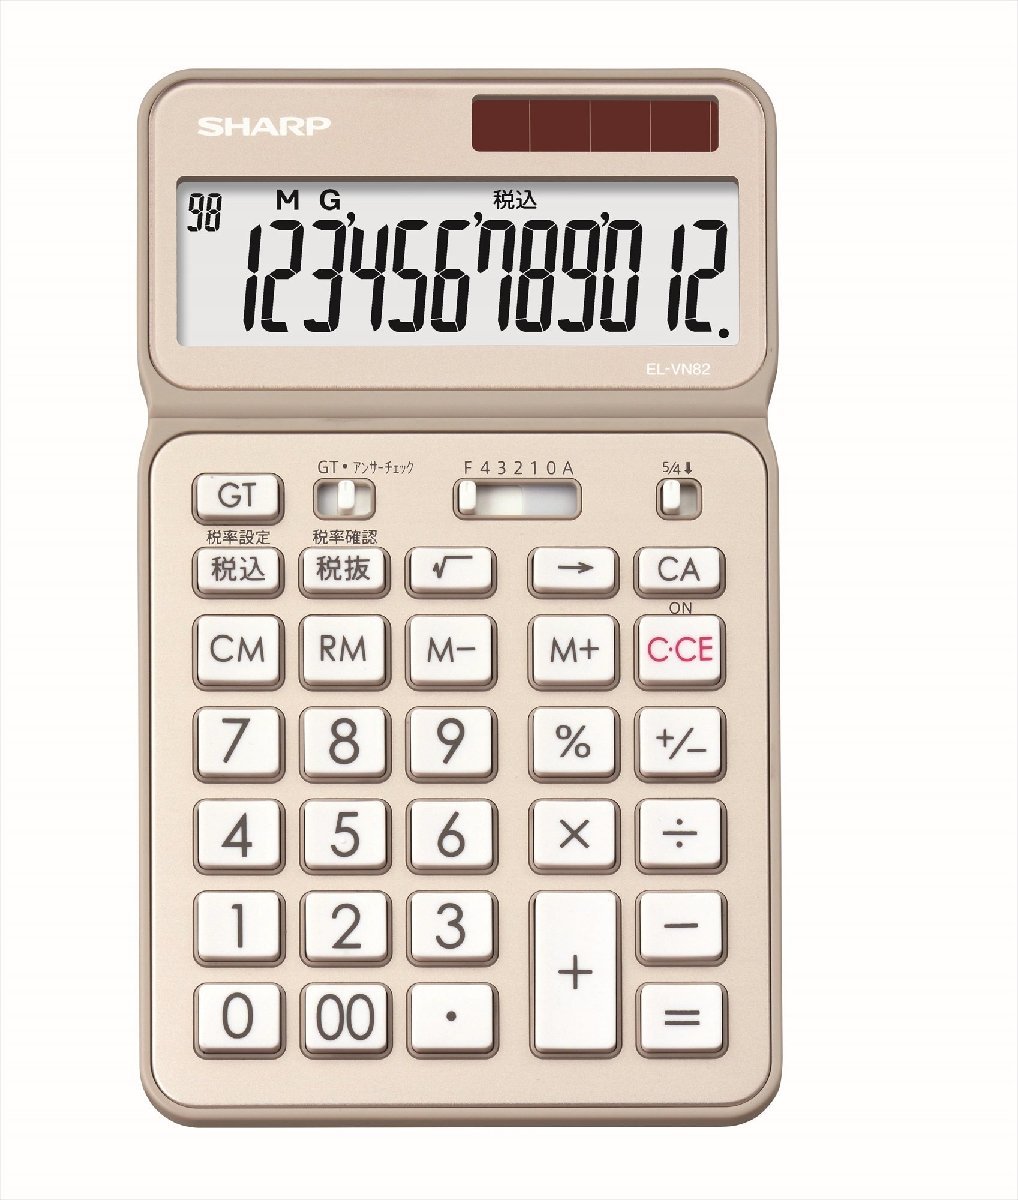  бесплатная доставка * sharp калькулятор 50 anniversary commemoration модель Nice размер модель оттенок золота EL-VN82-NX